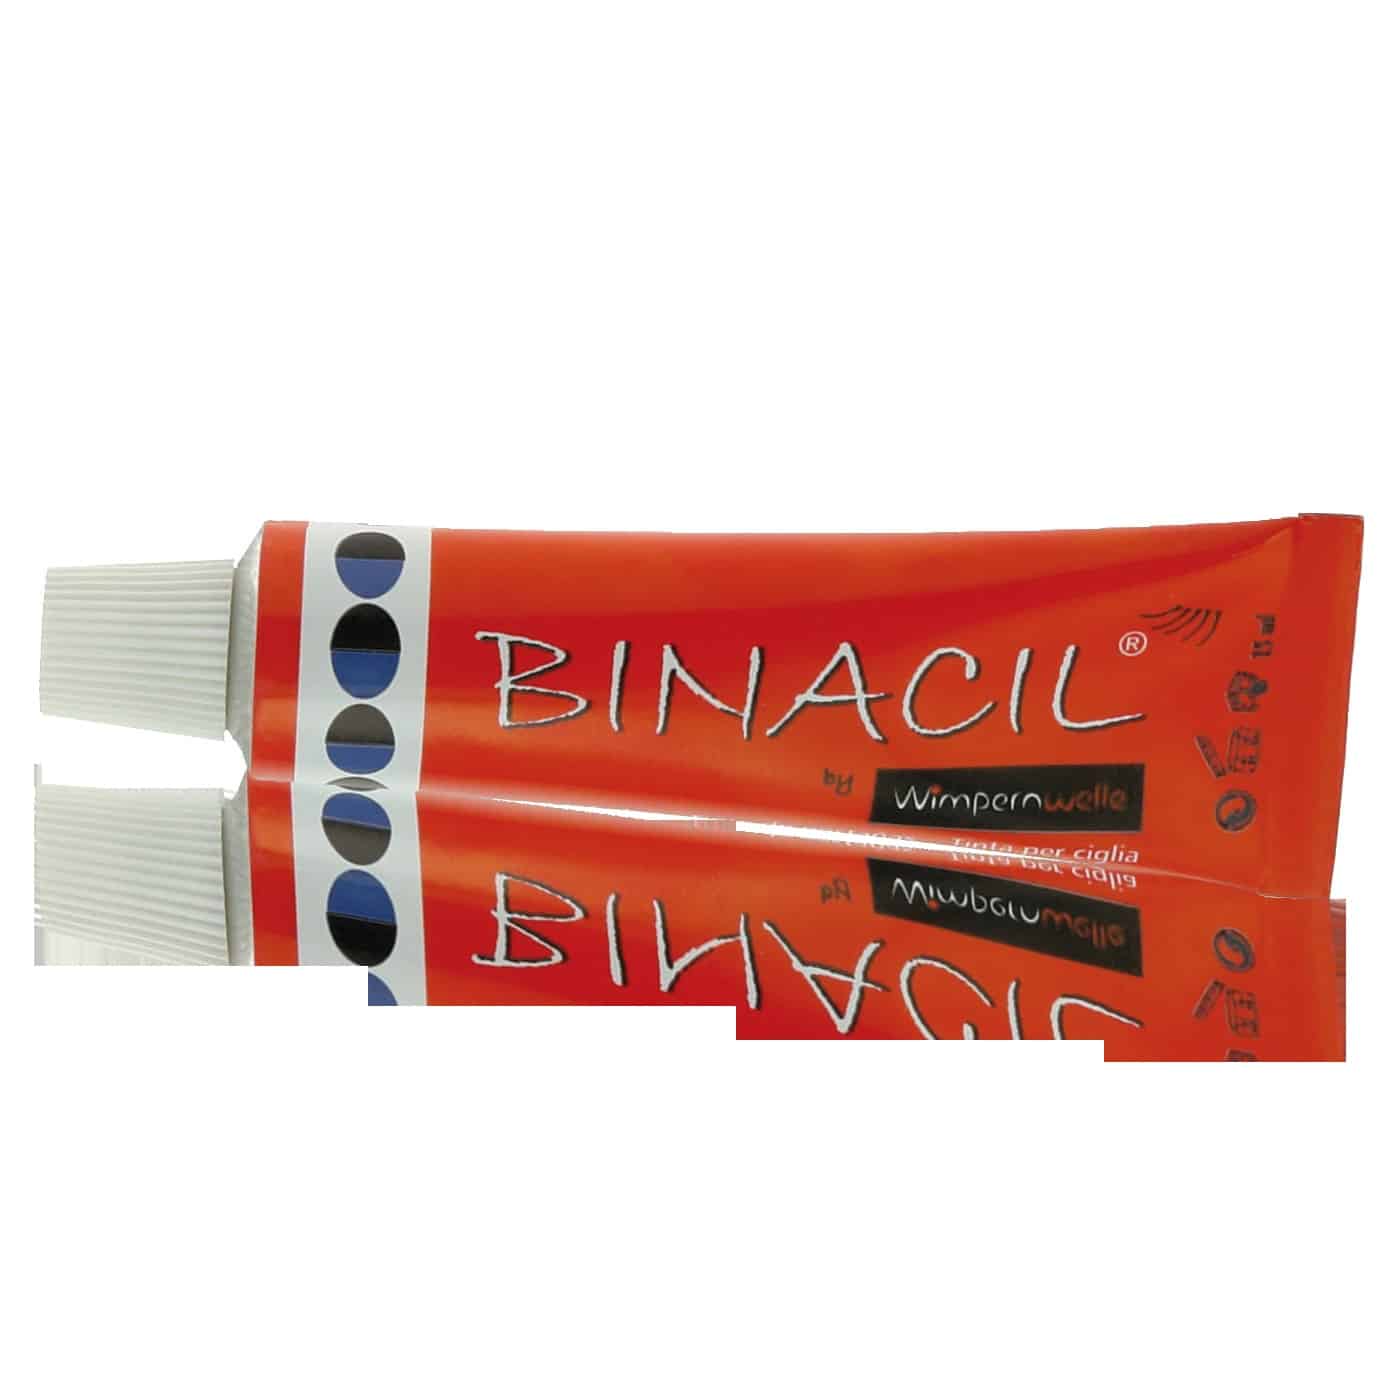 binacil-wimpern-und-augenbrauenfarbe-blauschwarz-15g